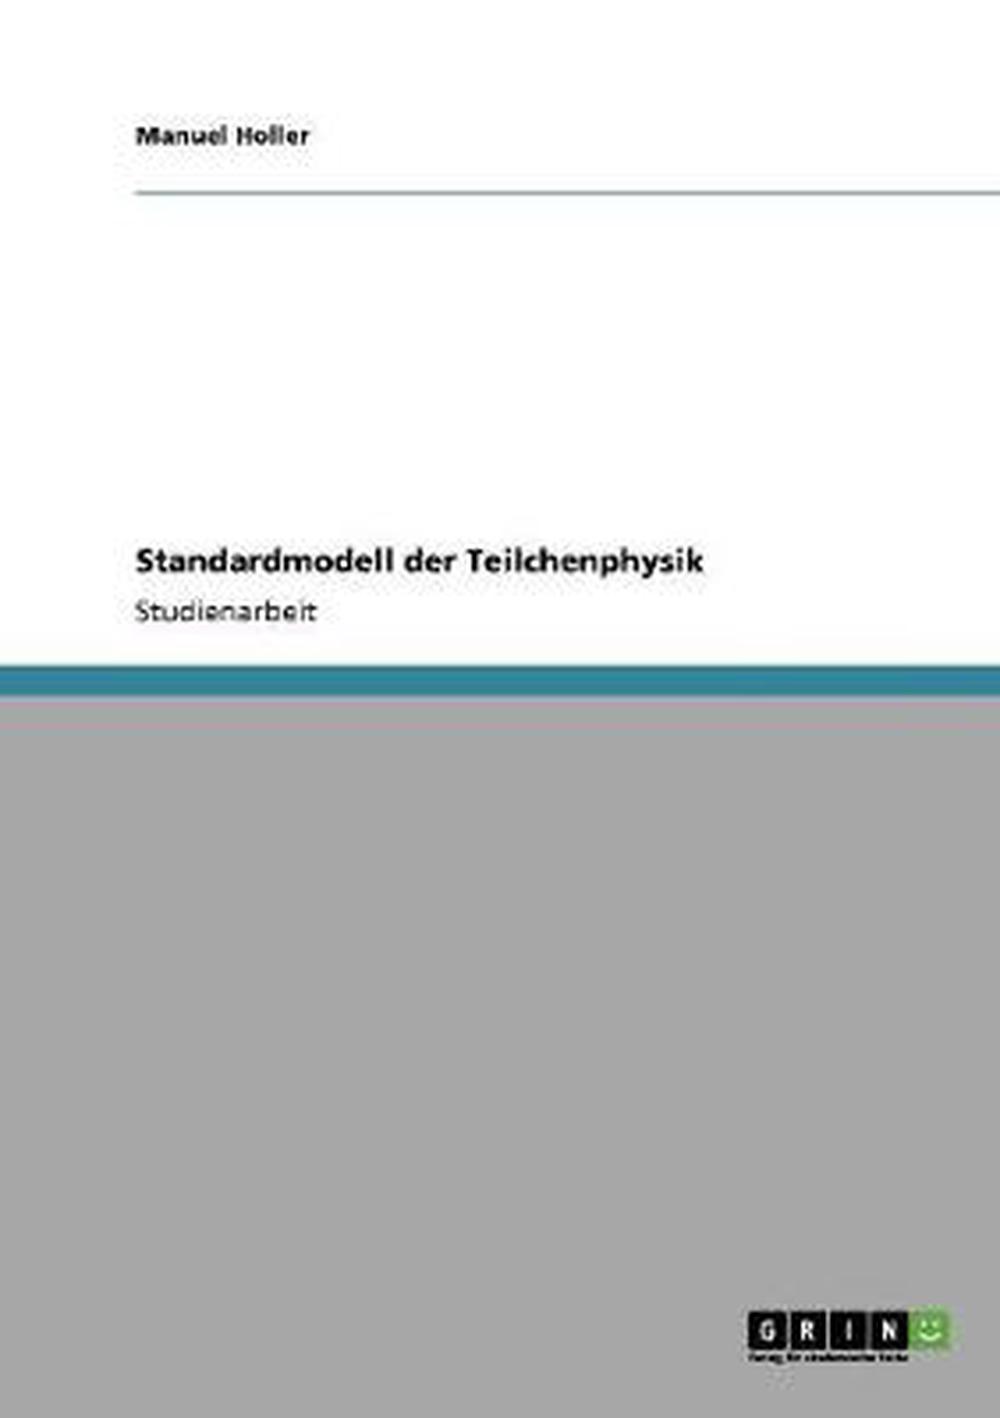 Standardmodell Der Teilchenphysik by Manuel Holler (German ...